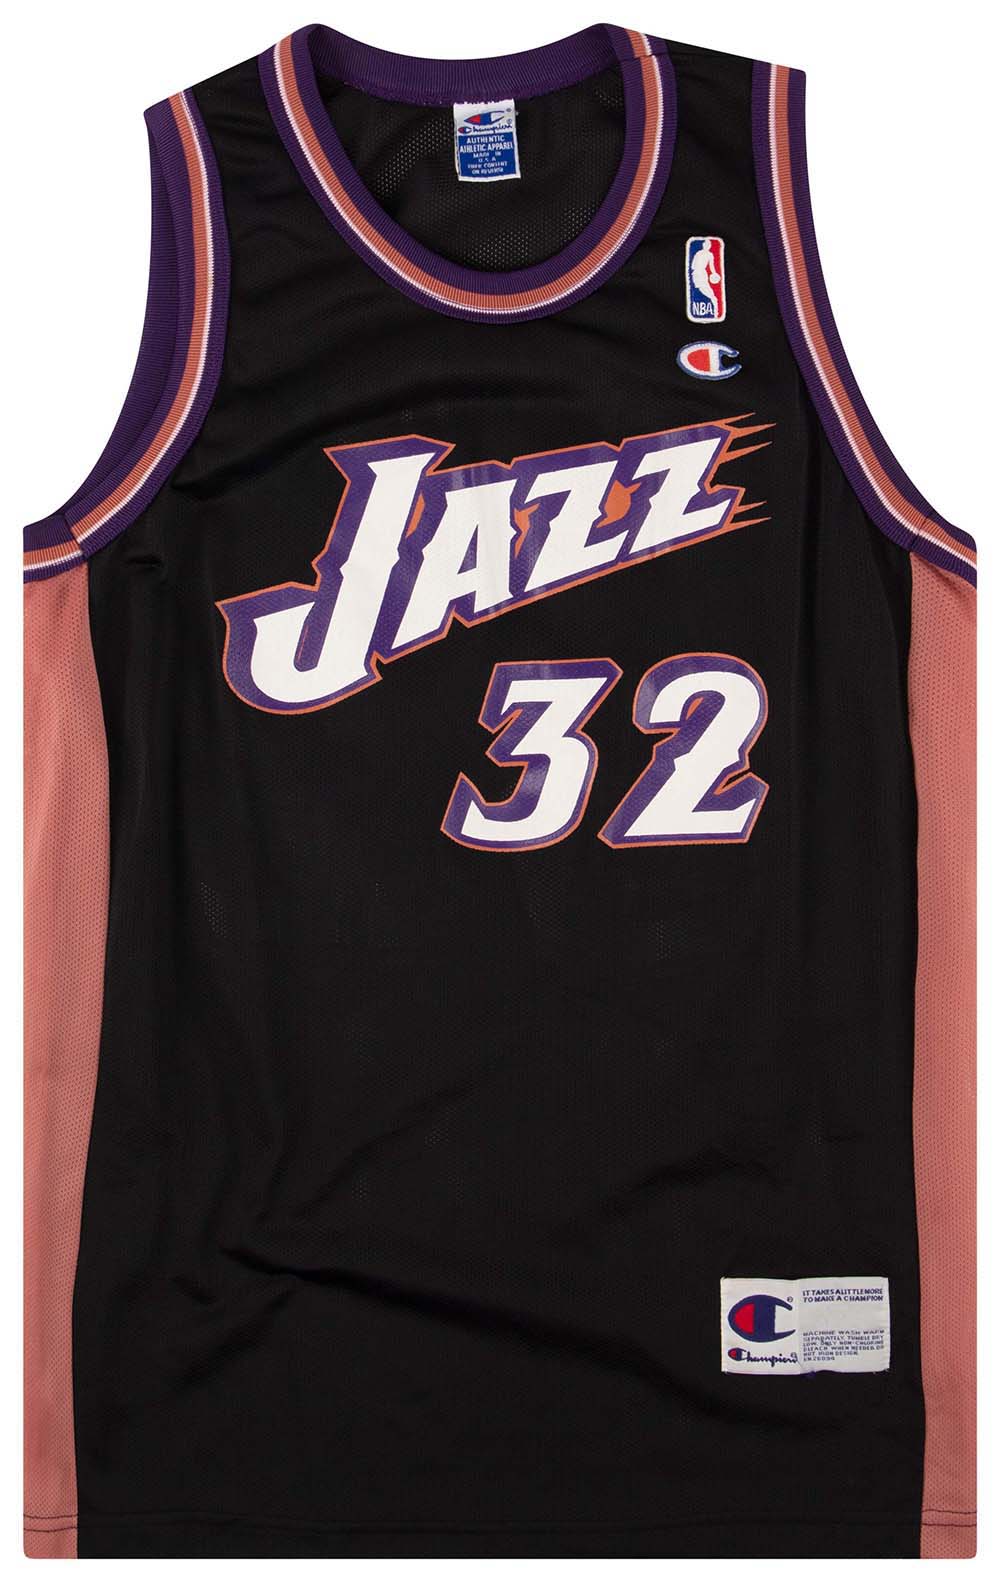 Top 50 Utah Jazz Players: #1 Karl Malone